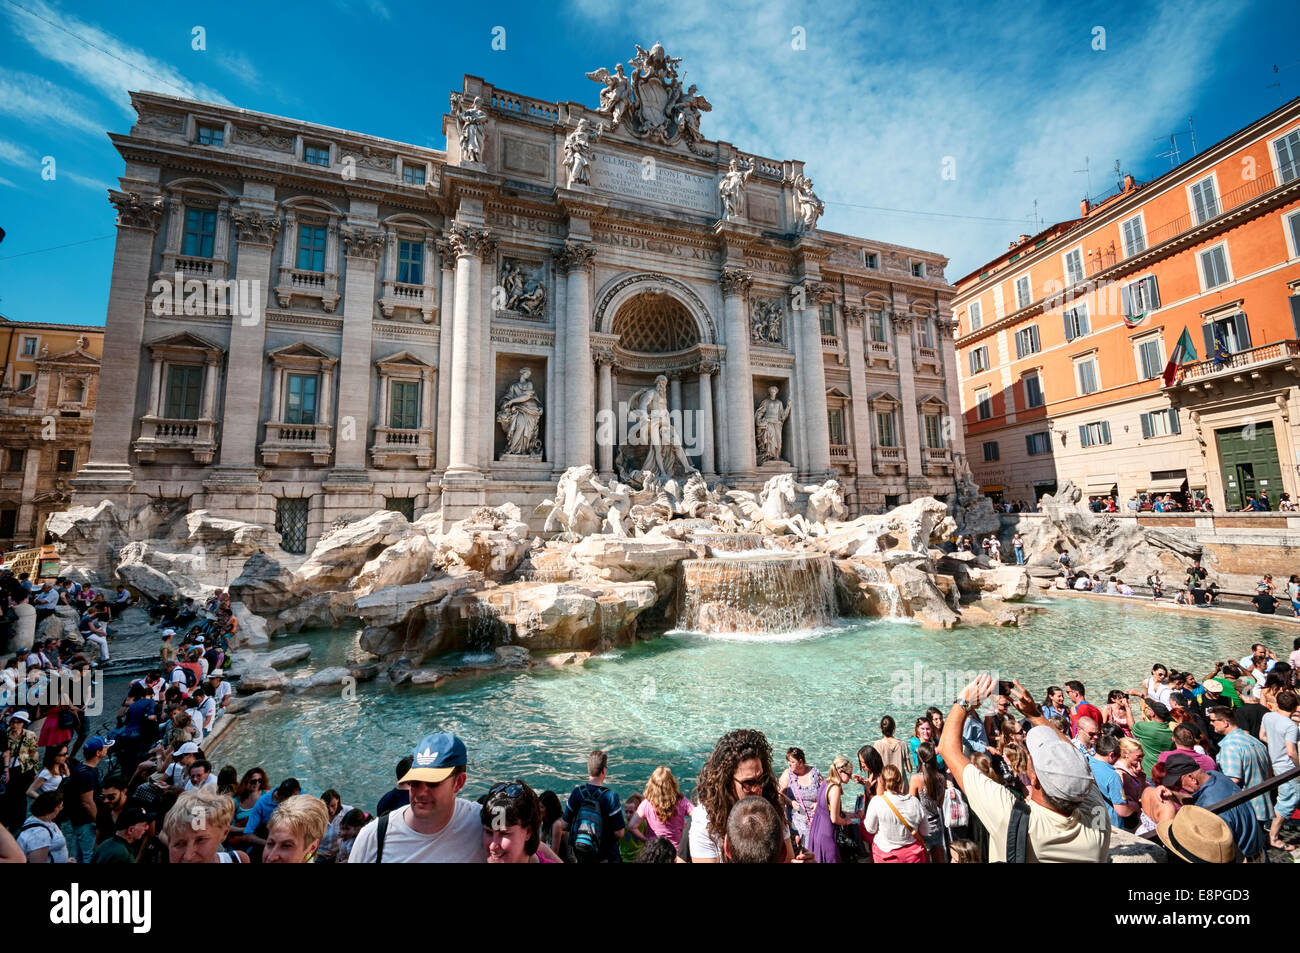 Rome, Italie - 12 mai 2012 : les touristes visitant la fontaine de Trevi. Fontaine de Trevi est un symbole de la Rome Impériale. C'est l'un Banque D'Images